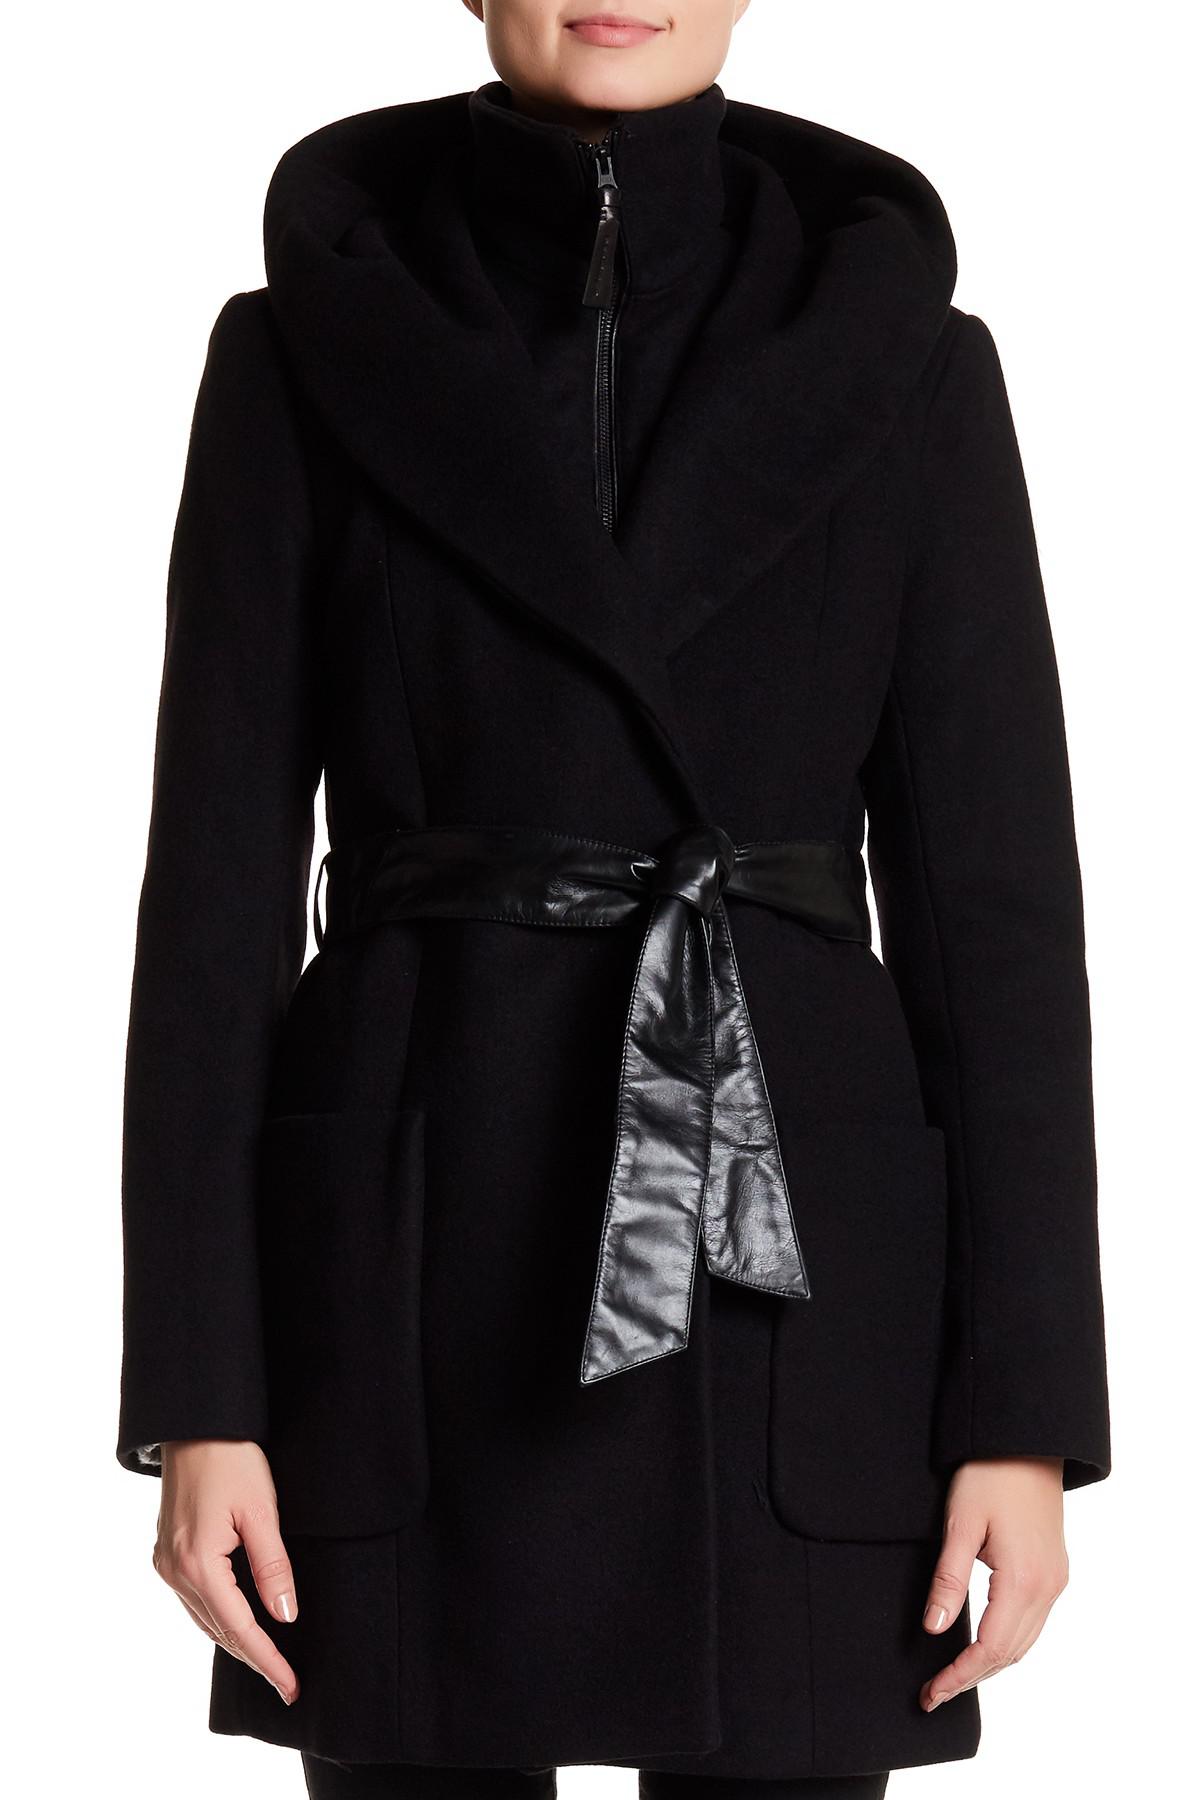 Mackage Siri Wool Blend Coat in Black - Lyst